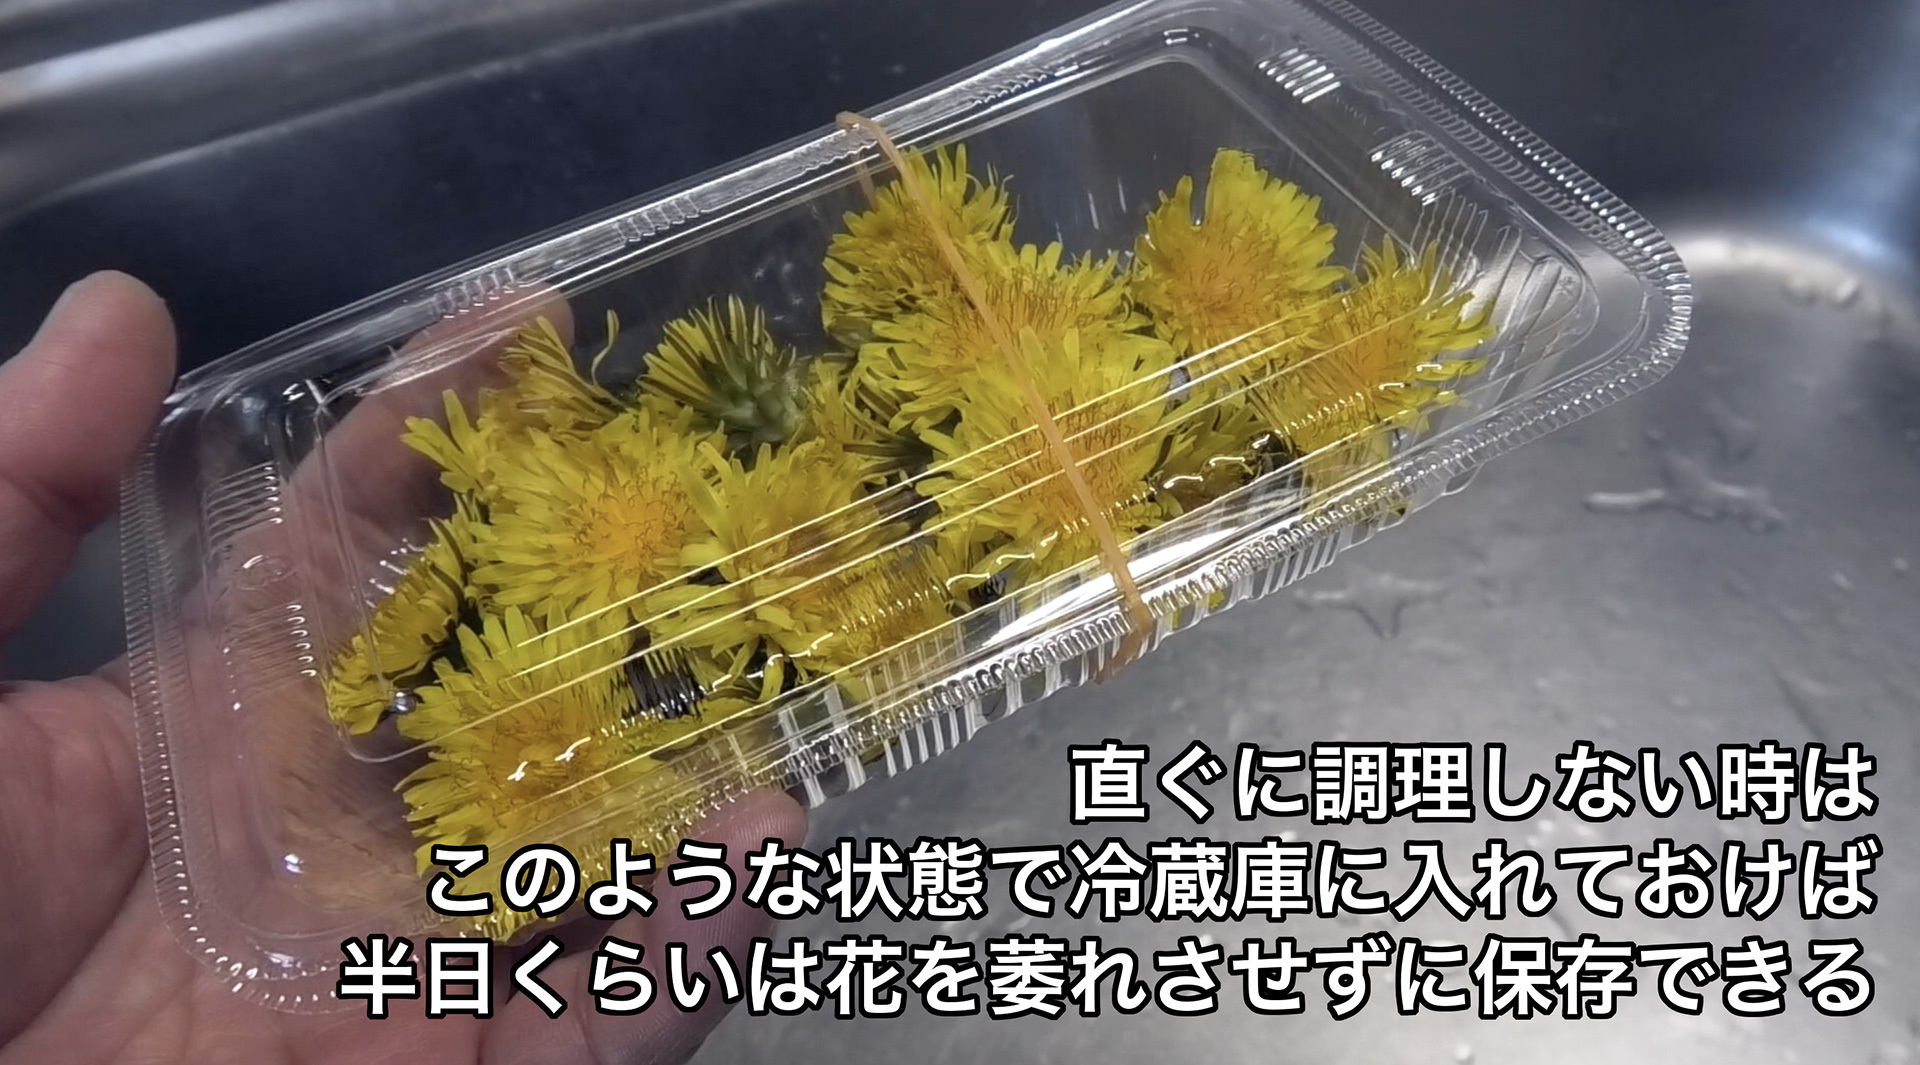 この状態で冷蔵庫に入れておけば半日くらいは花が萎れさせずに保存できる